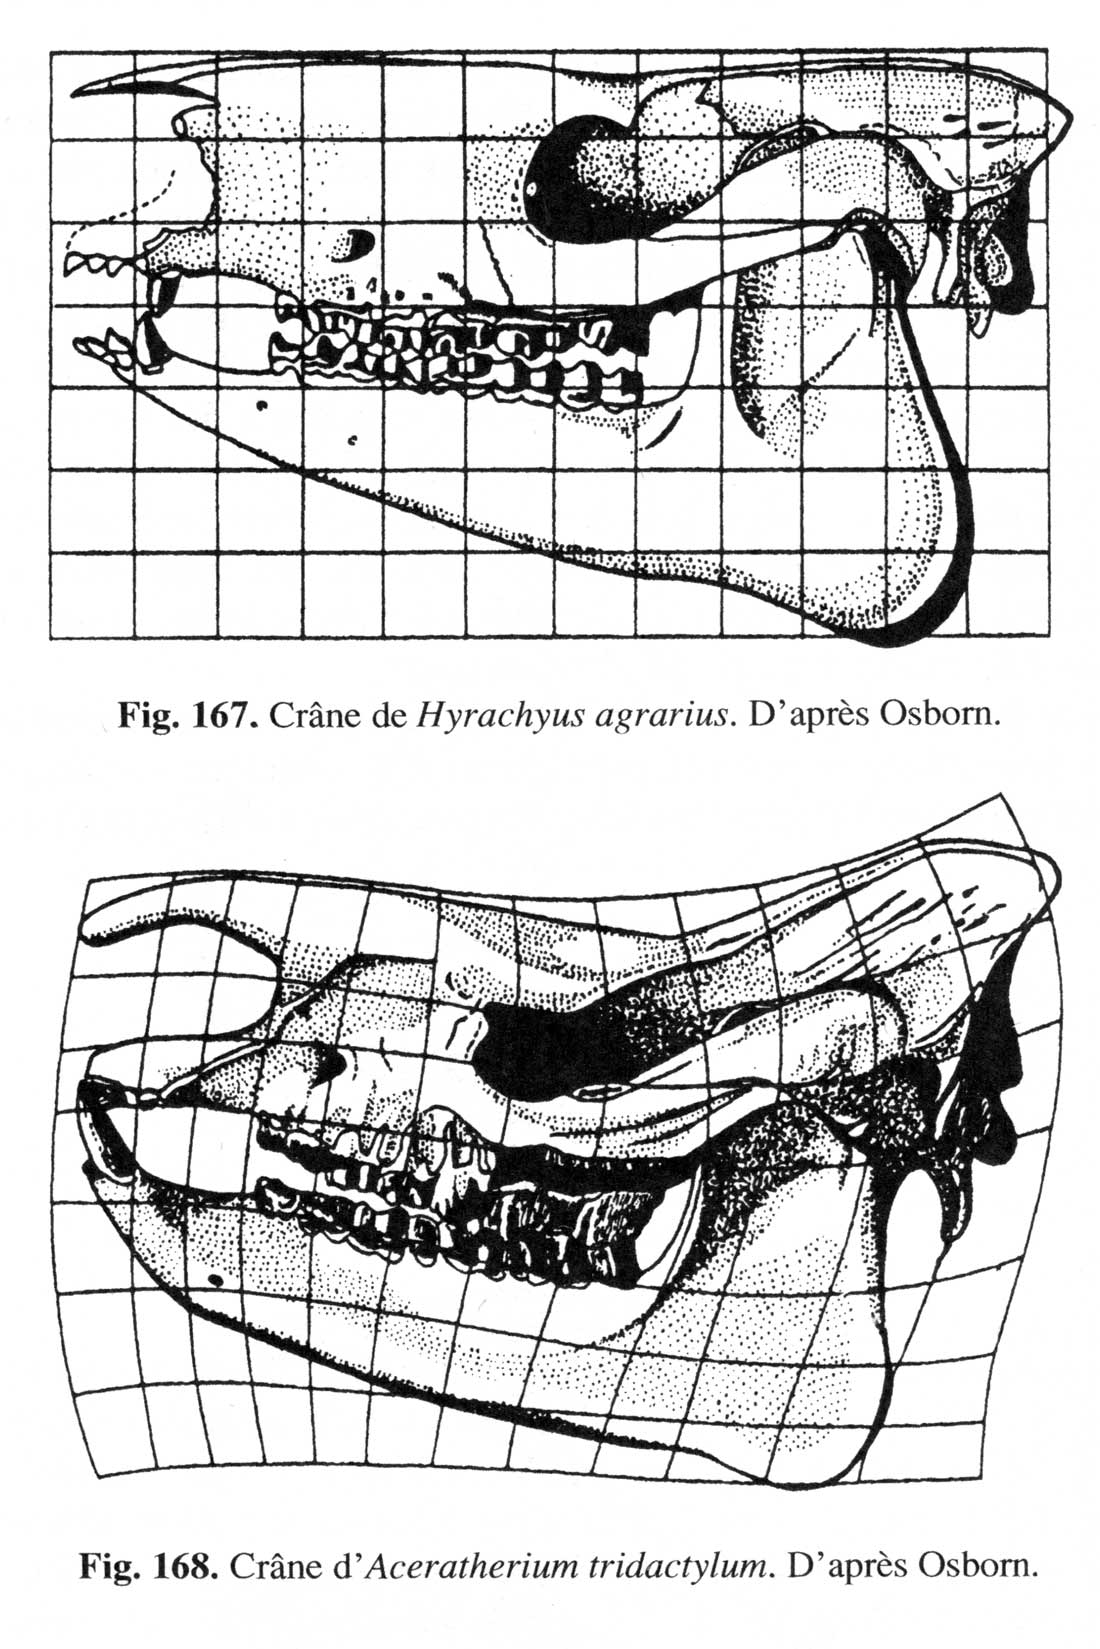  Fig. 2. Comparaison entre un crâne d’Hyrachyus agrarius et d’Aceratherium tridactylum (fig. 168)